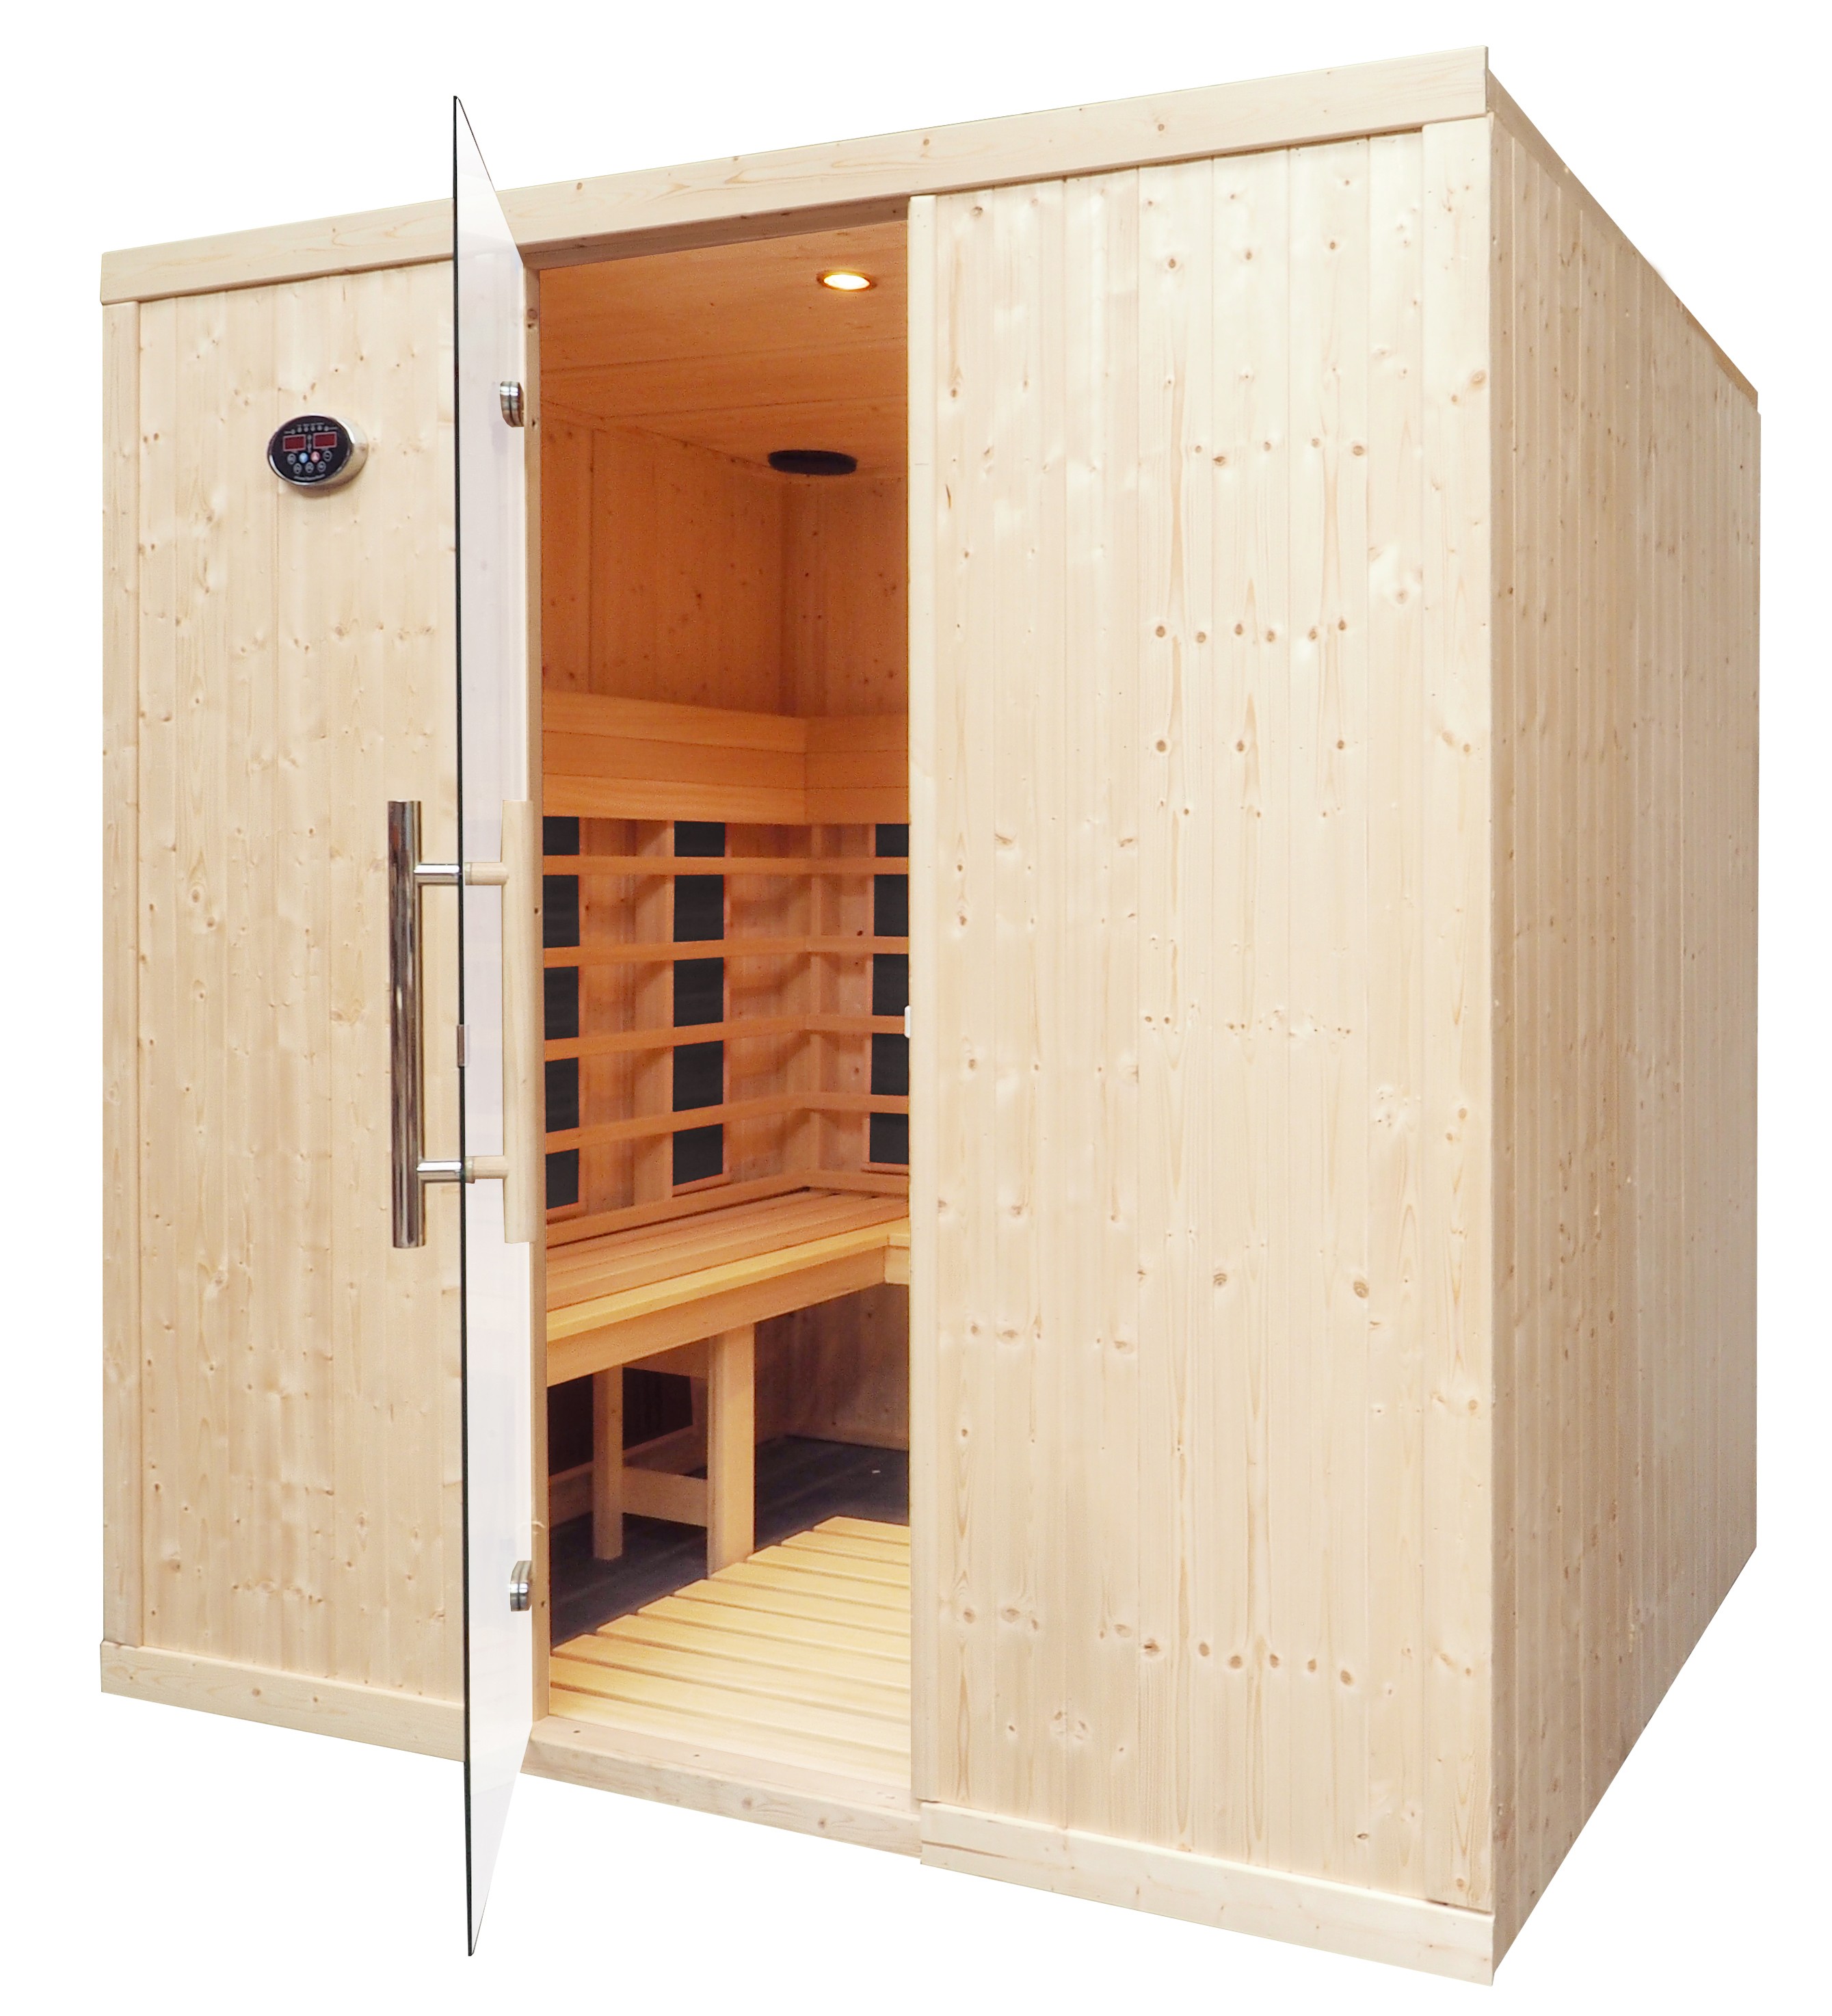 IR2530L - Cabina de sauna infrarrojos - 4 personas - bancos en L